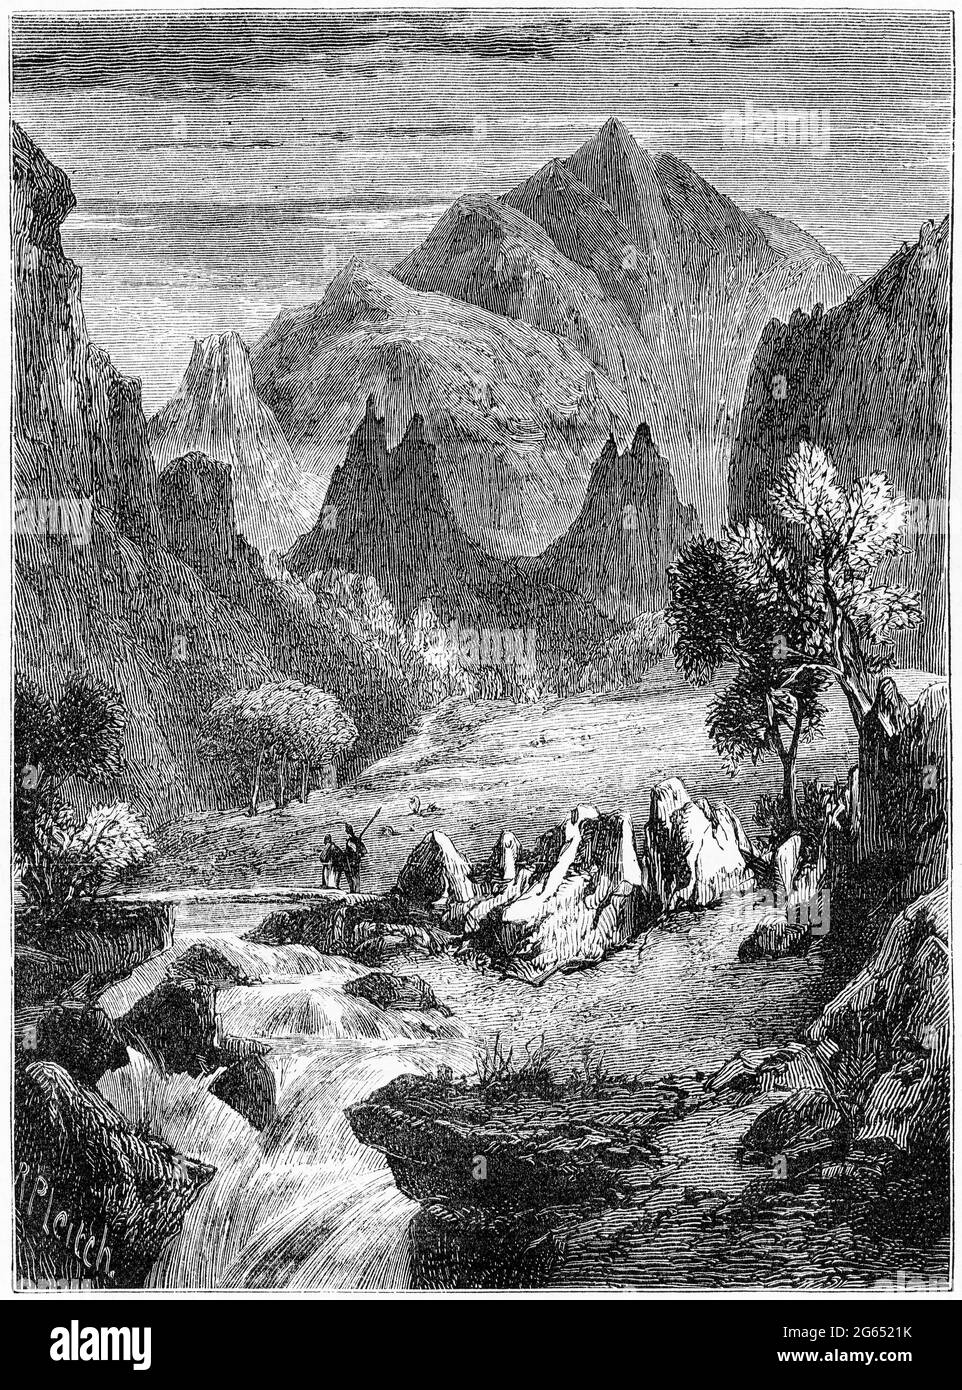 Incisione del passo montano di Pra del Tor in Italia, regolarmente utilizzato dai Valdesi, pubblicata intorno al 1878 Foto Stock